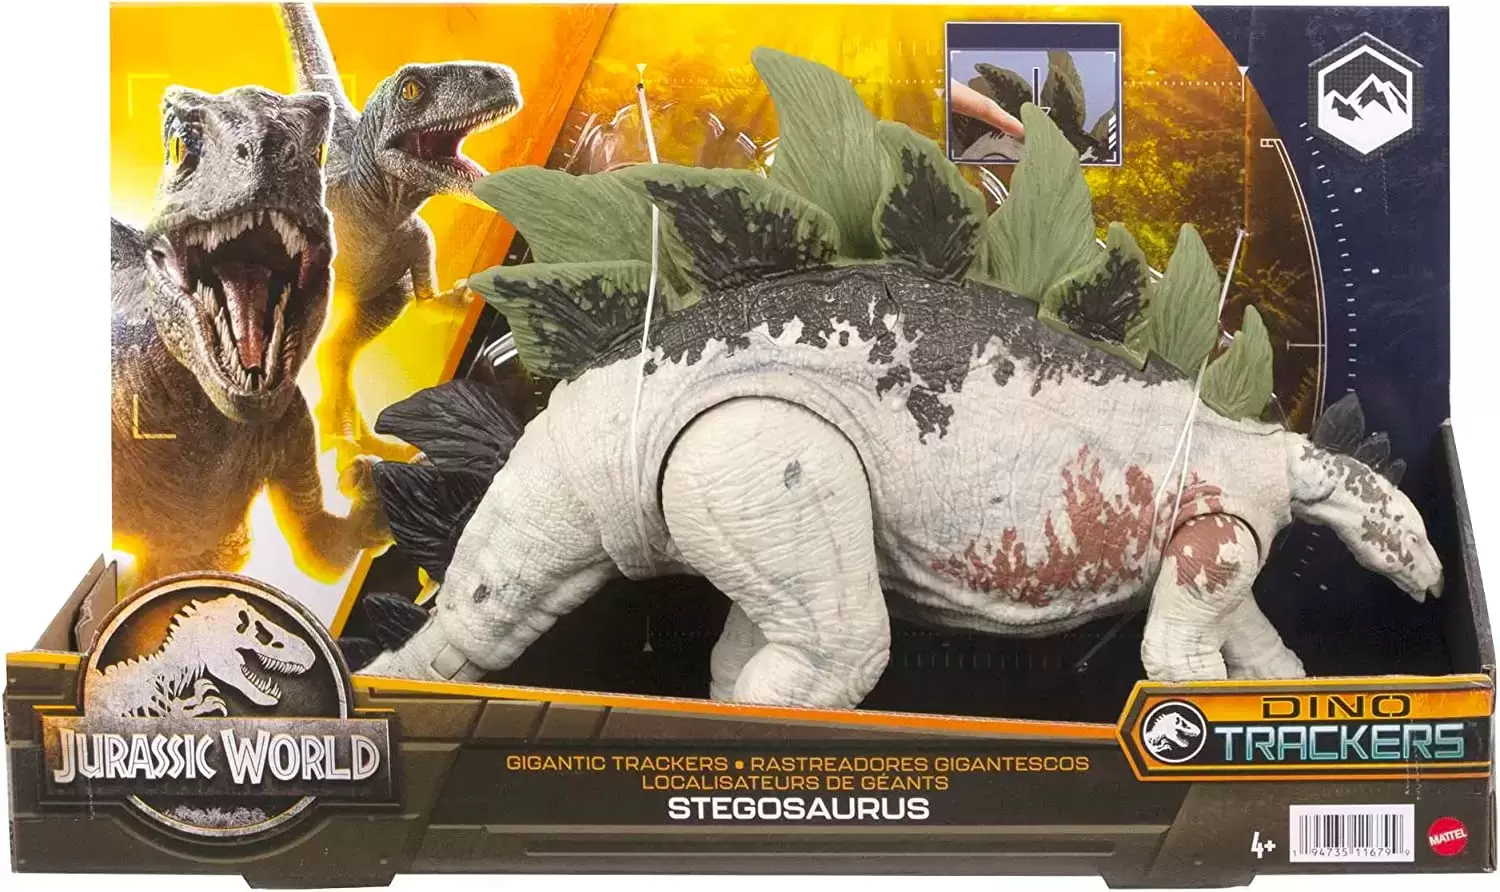 Jurassic World : Dino Trackers - Stegosaurus - Gigantic Trackers